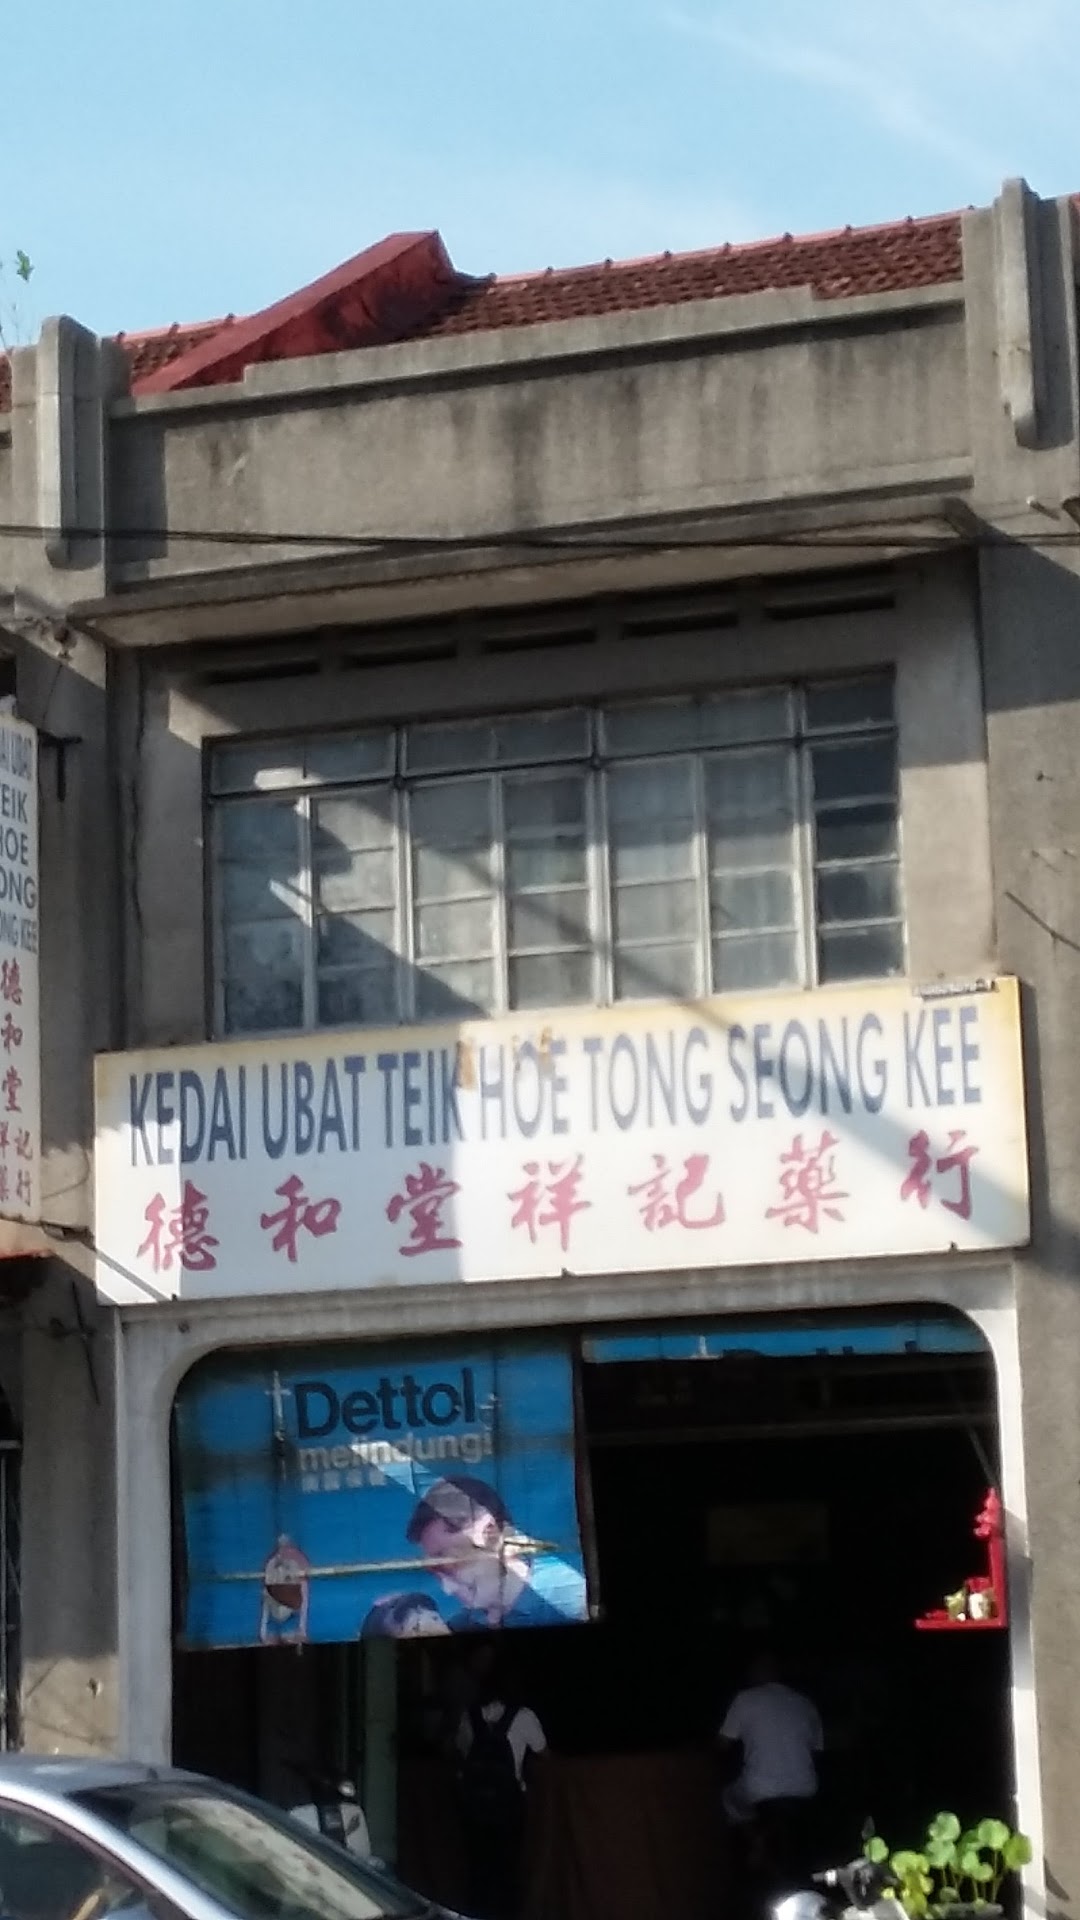 Kedai Ubat Hoe Tong Seong Kee